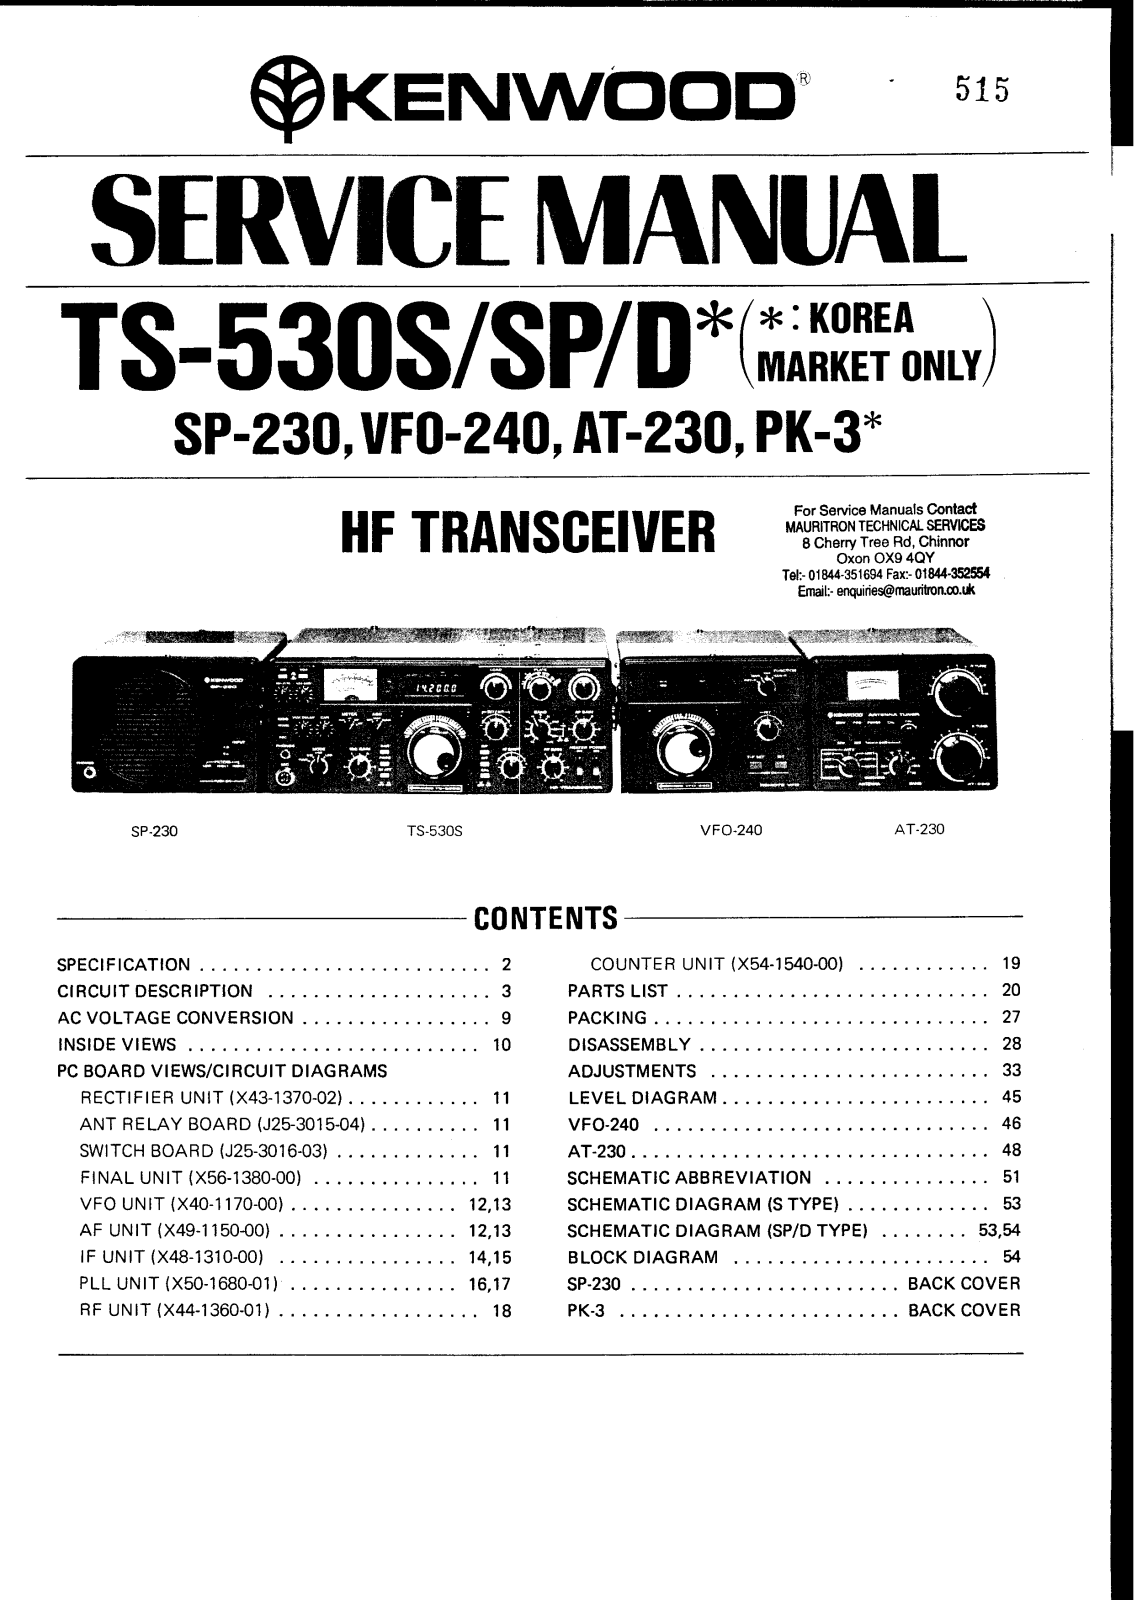 Kenwood VFO-240, PK-3 Service Manual